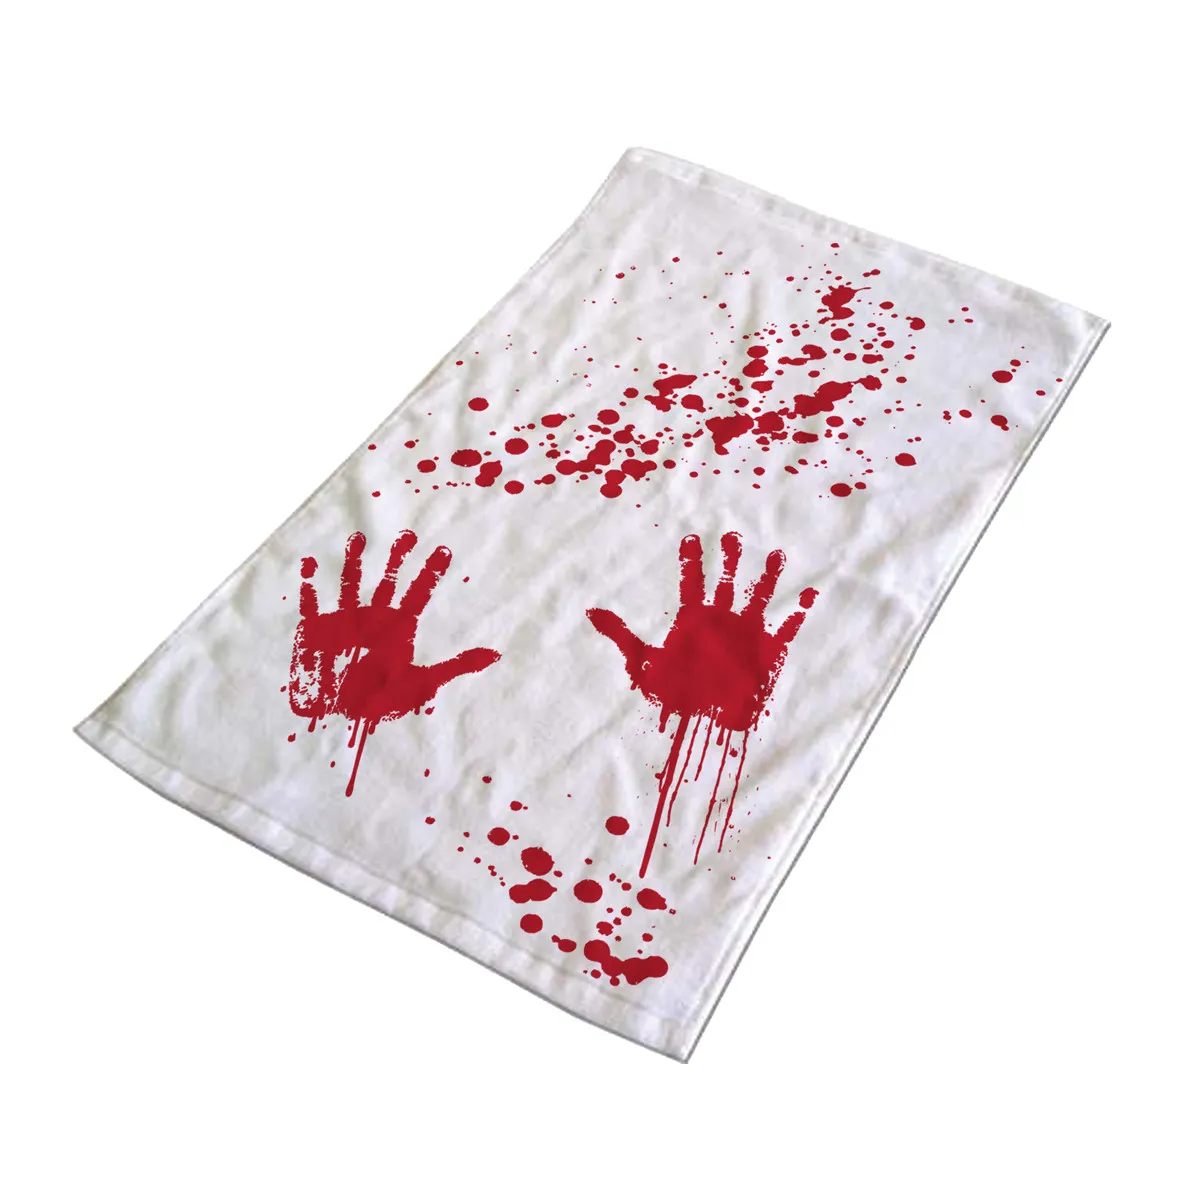 Handtuch - mit blutigen Händen